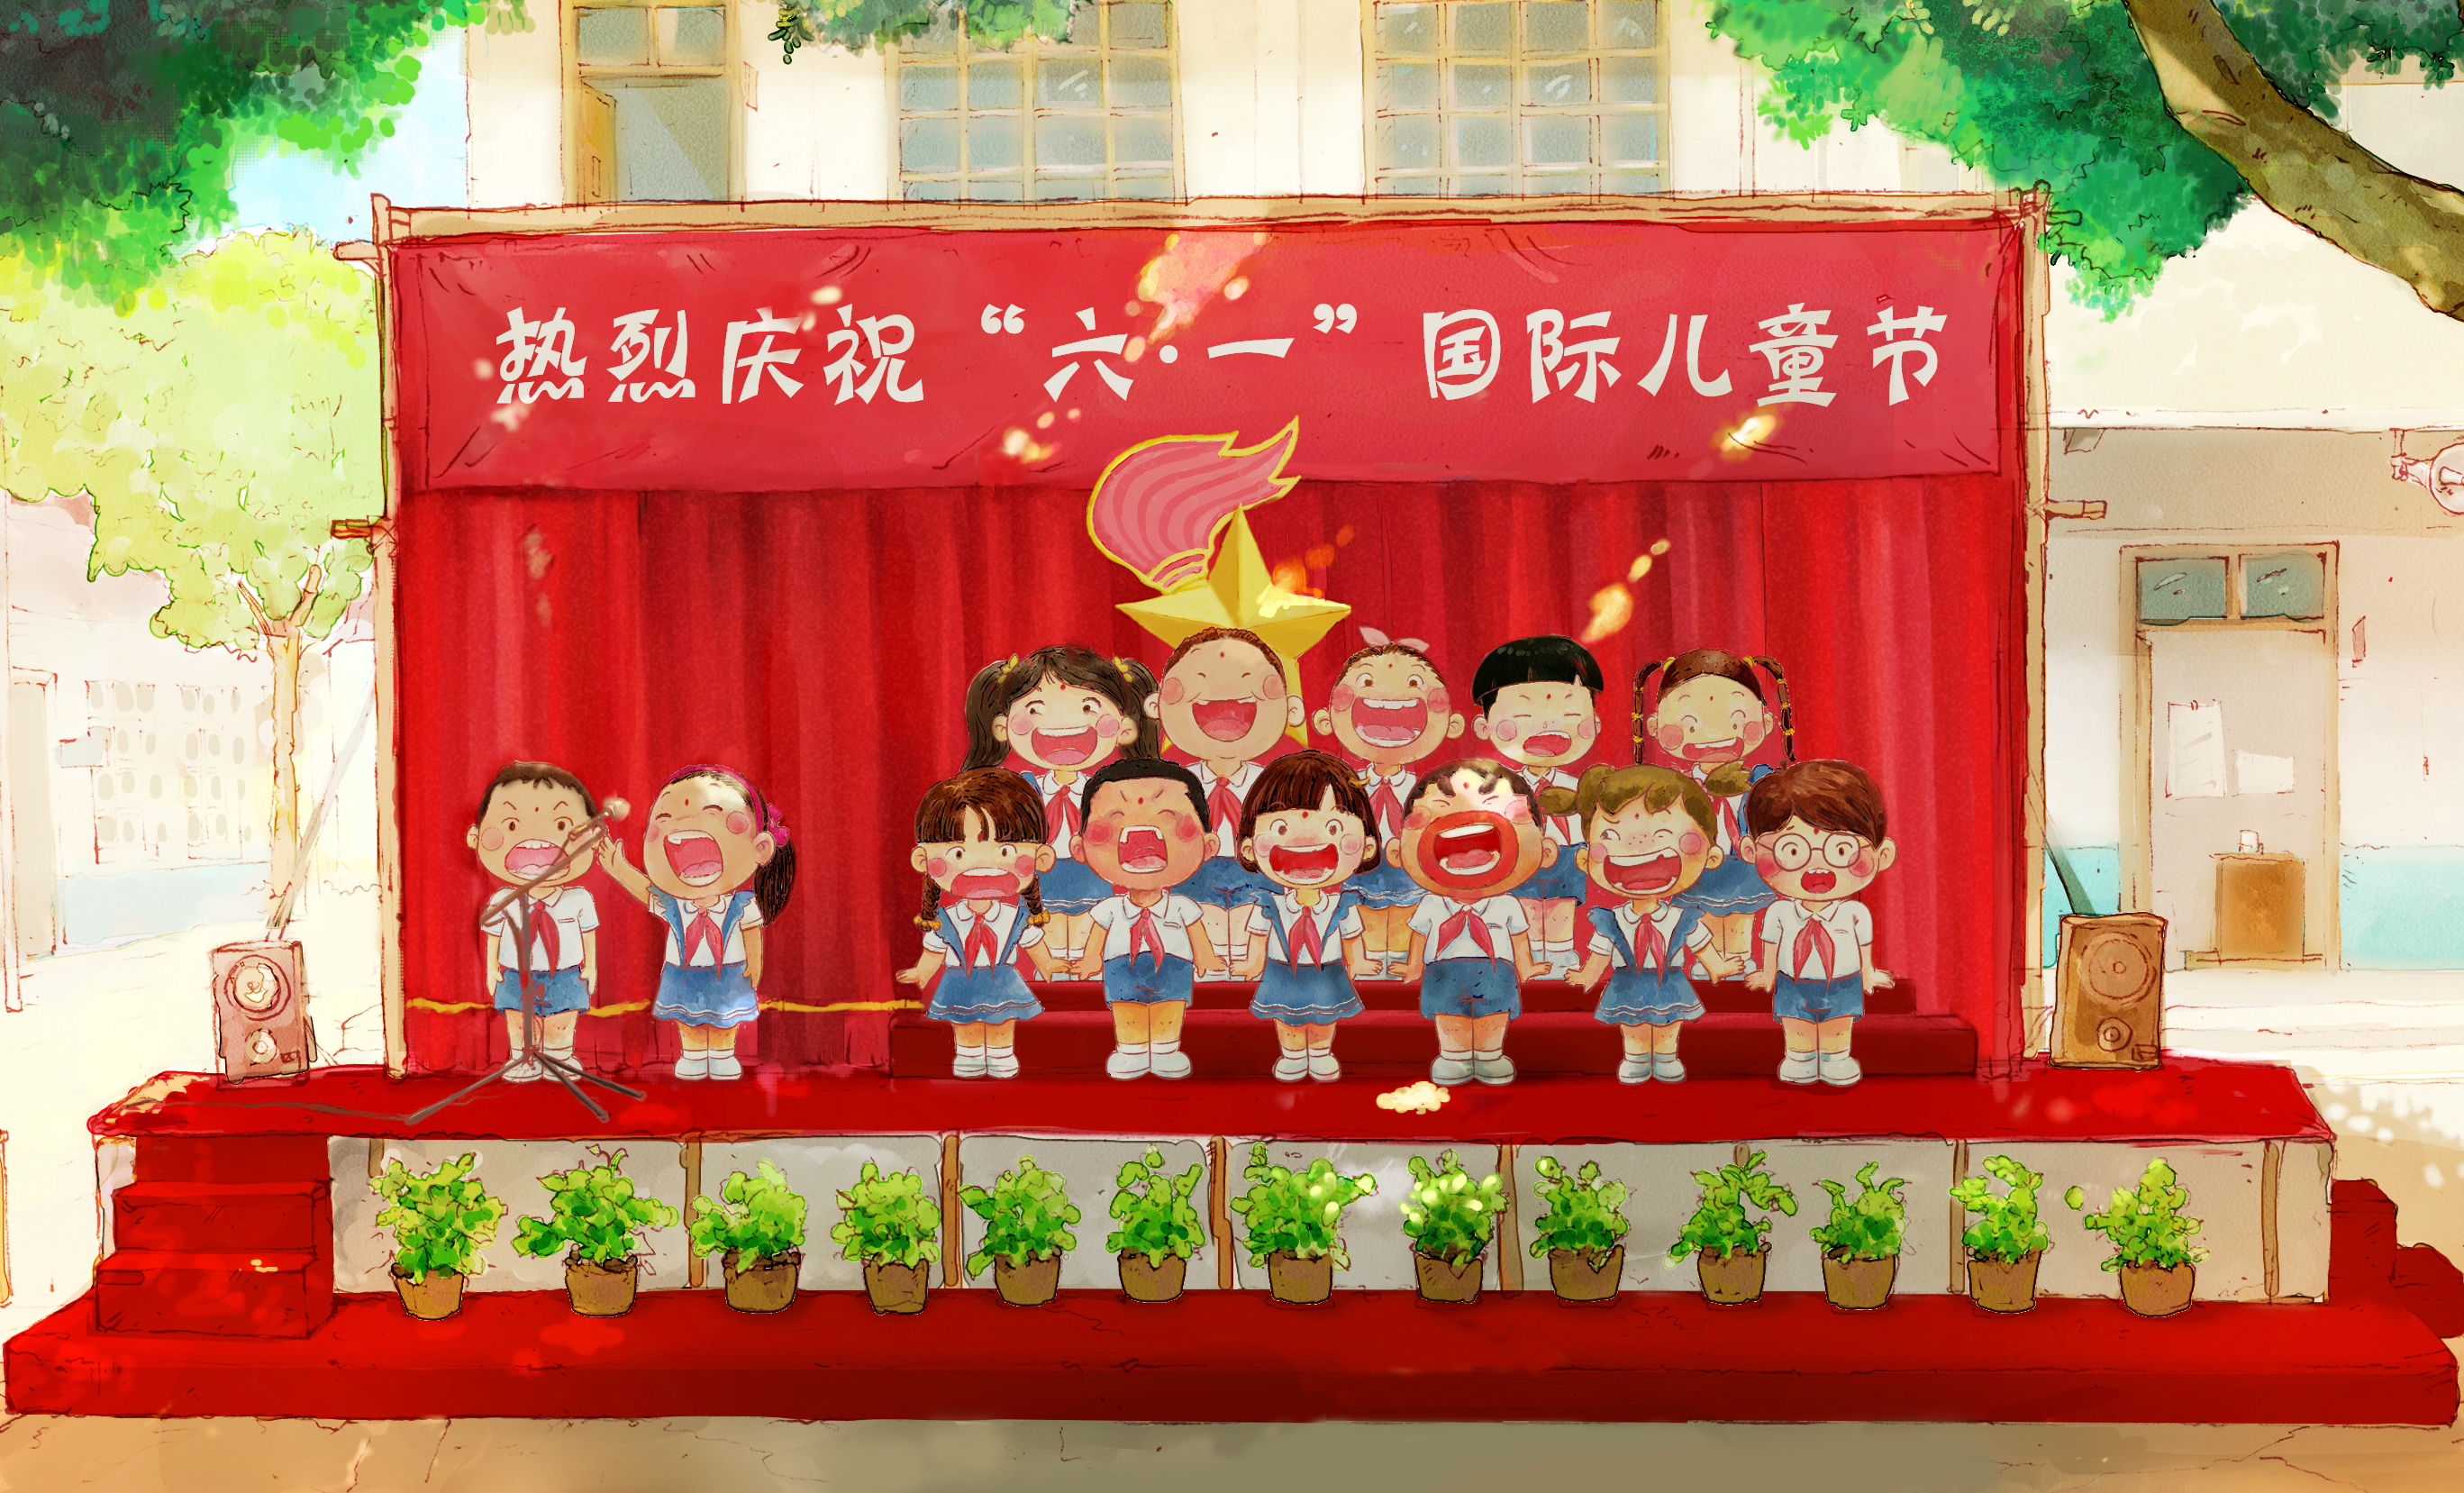 阿槑在南京新百陪你过六一儿童节